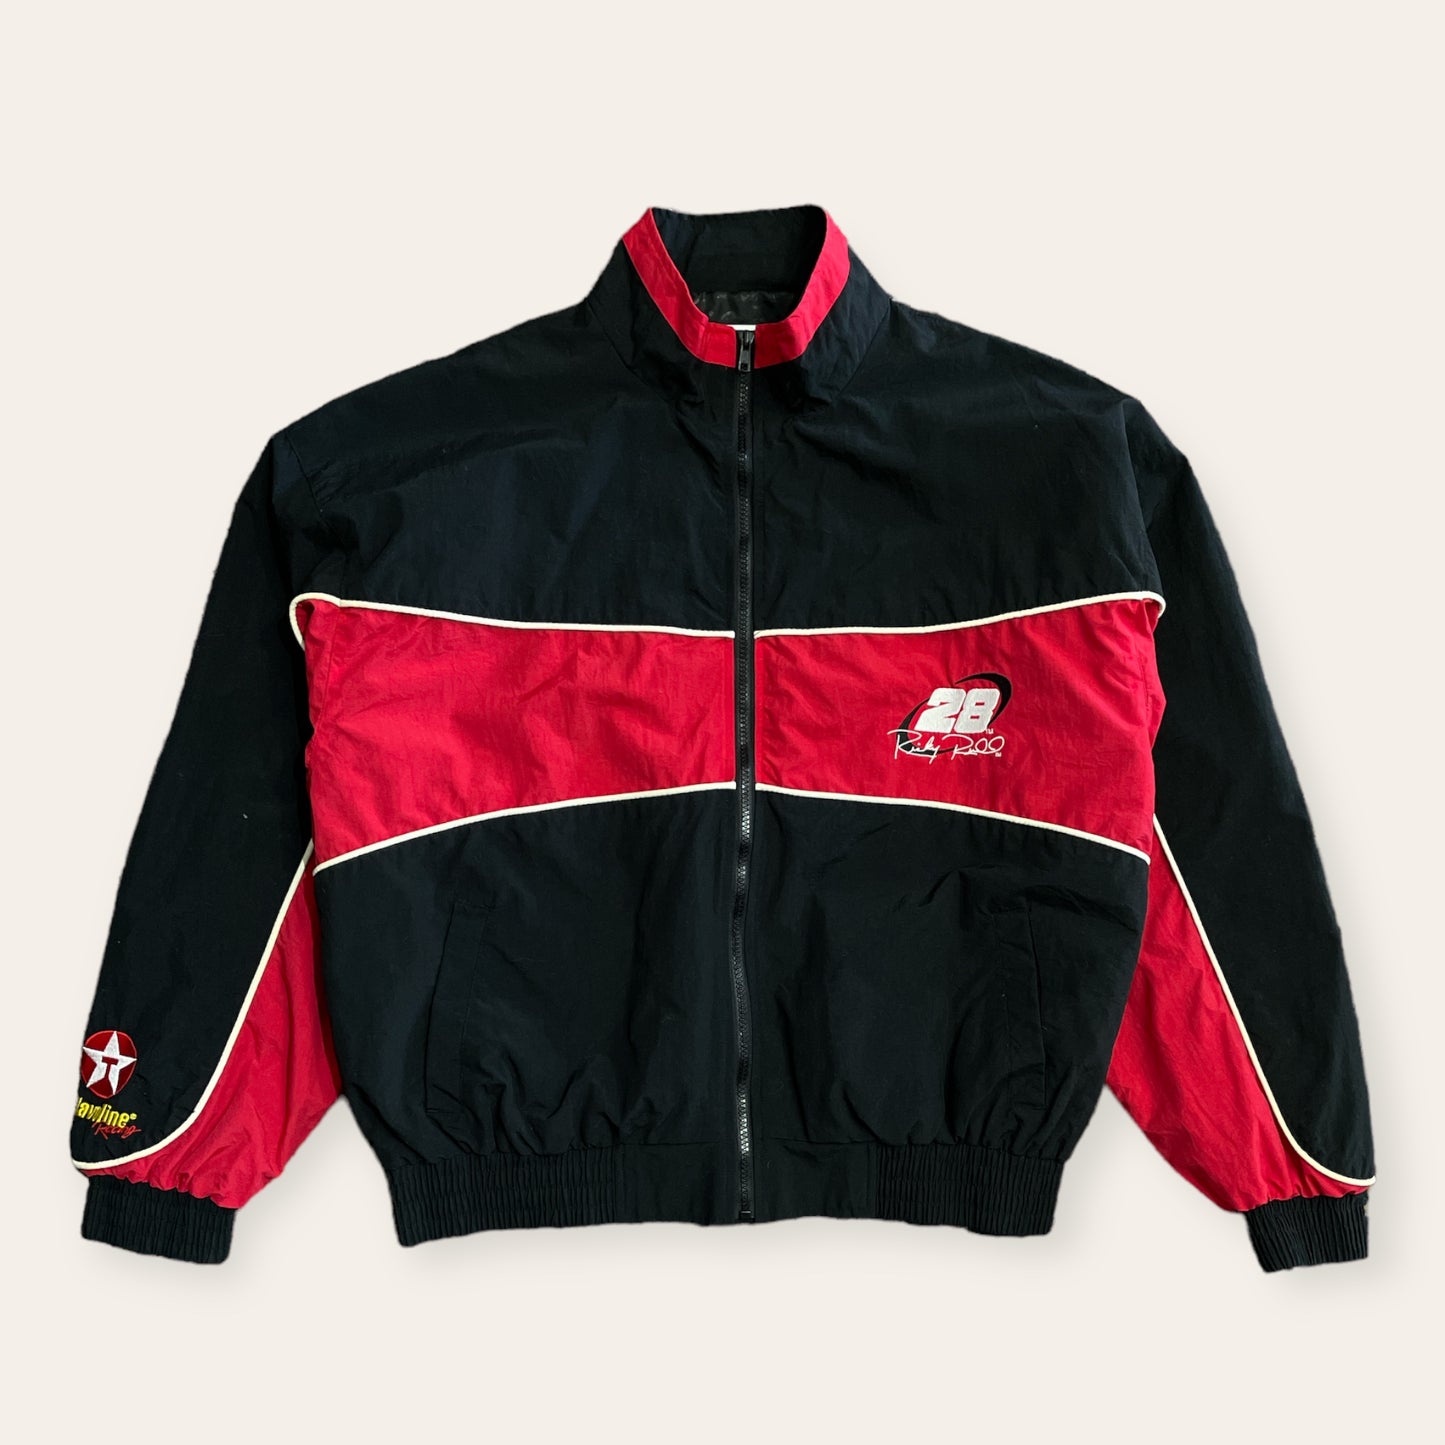 Vintage Ricky Rudd Racing Zip Up Jacket Size L